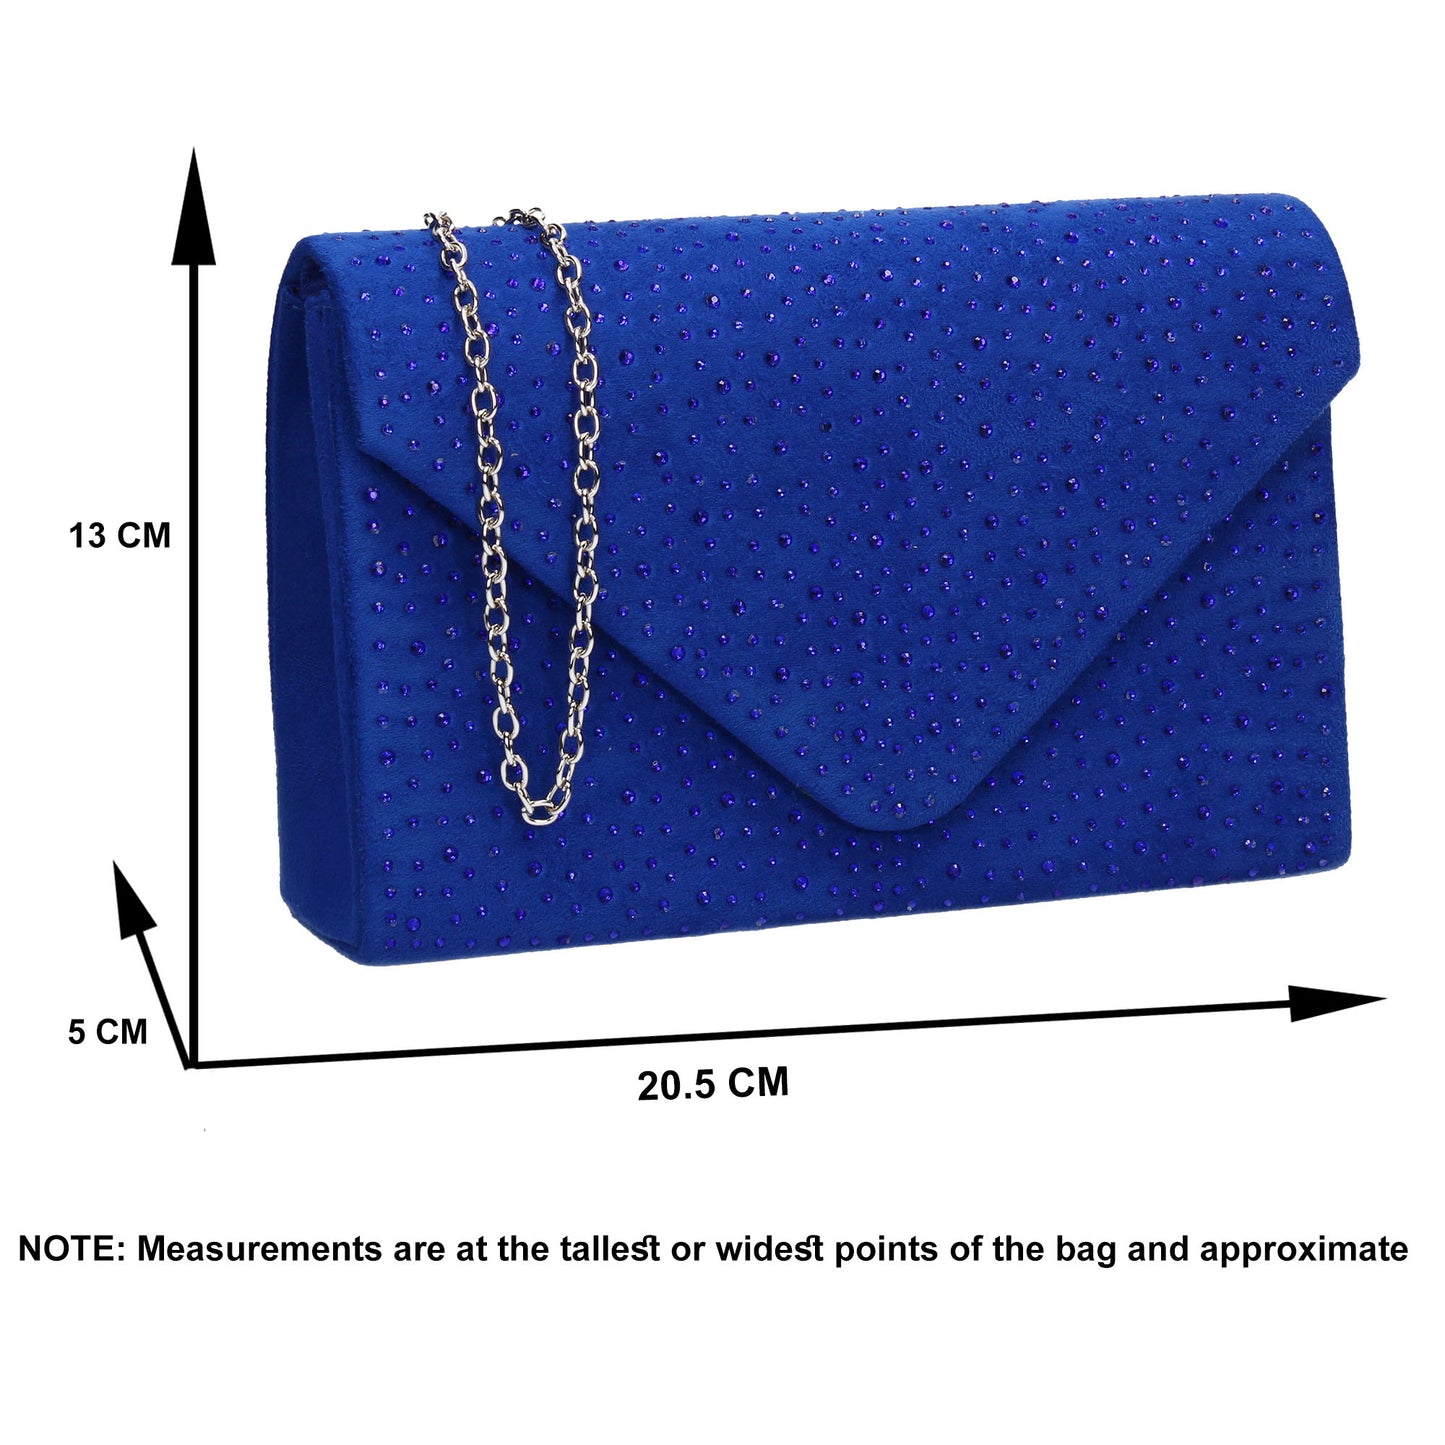 SWANKYSWANS Sidney Diamante Clutch Bag Royal Blue Cute Cheap Clutch Bag For Weddings School and Work